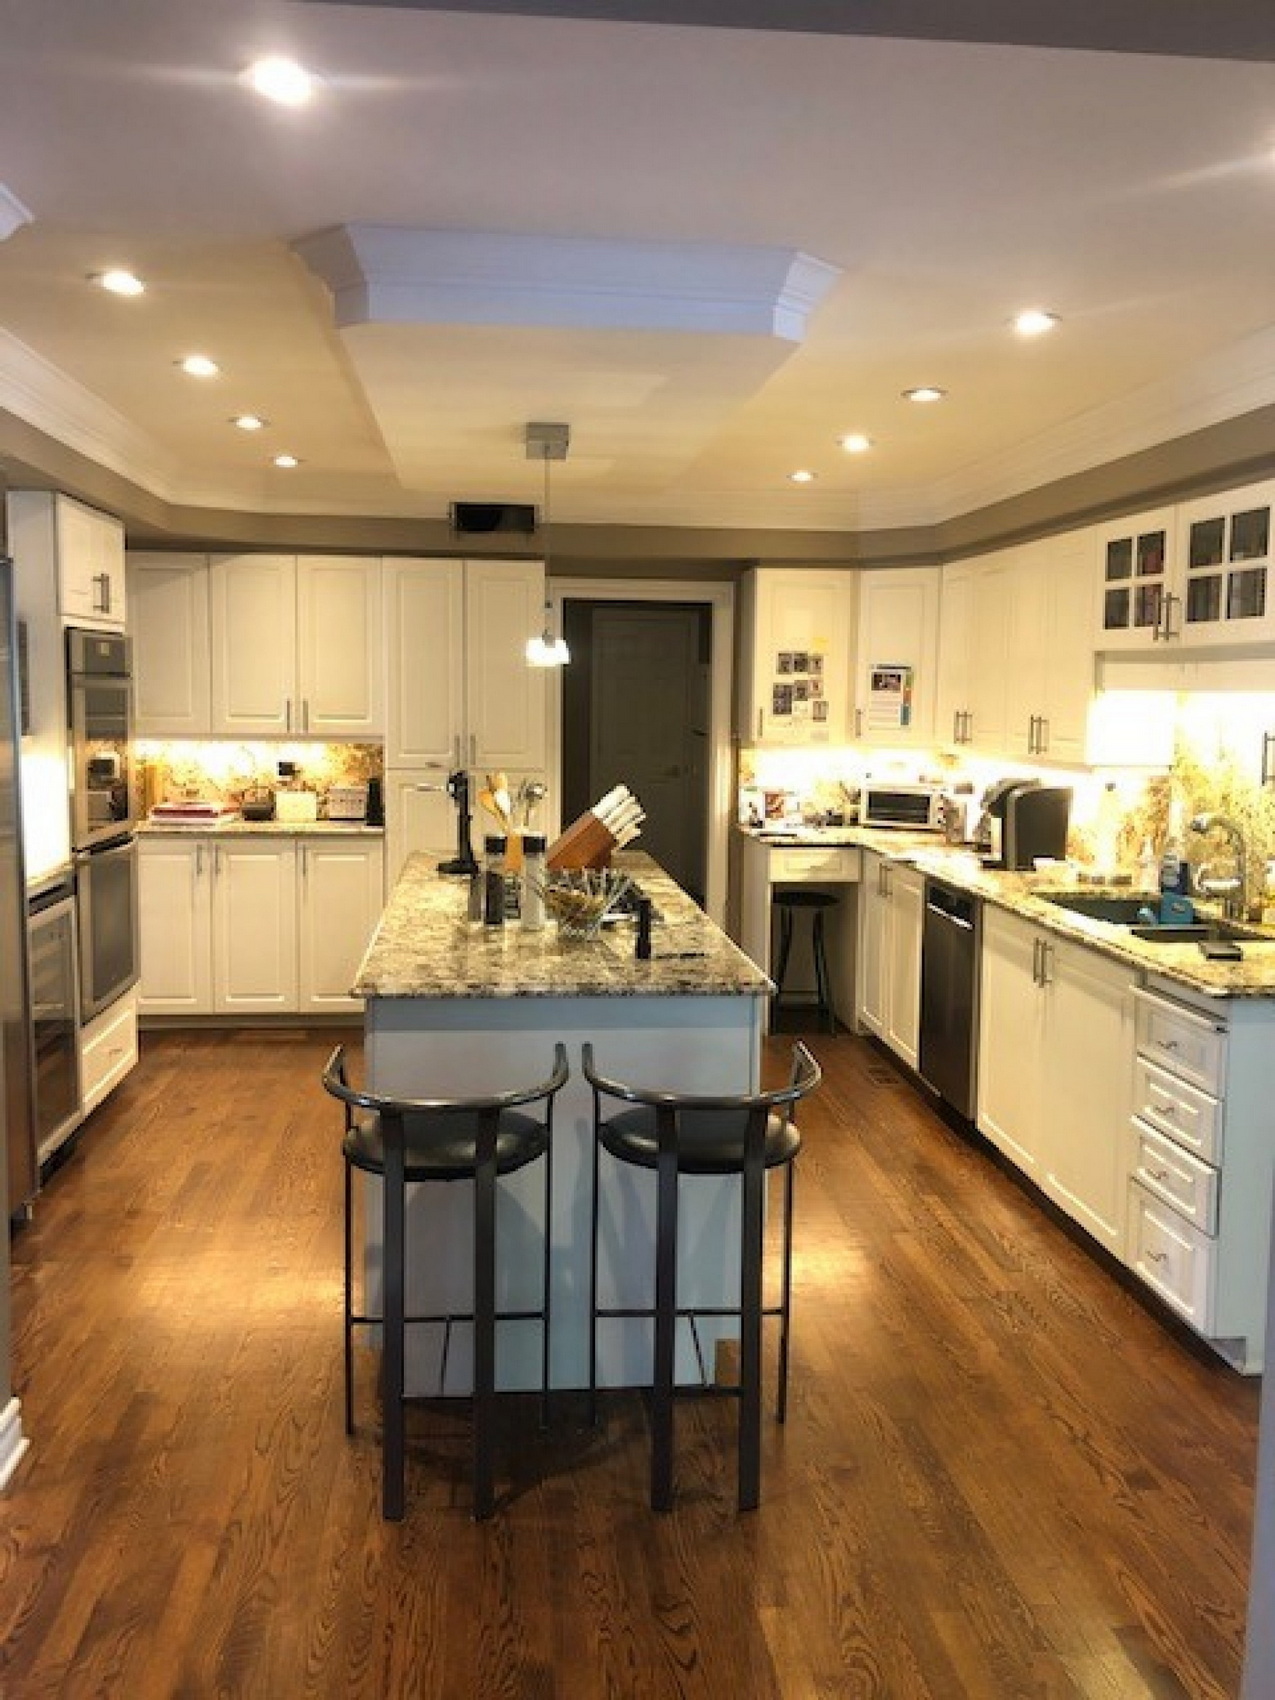 NKBA Ottawa kitchen before renovation